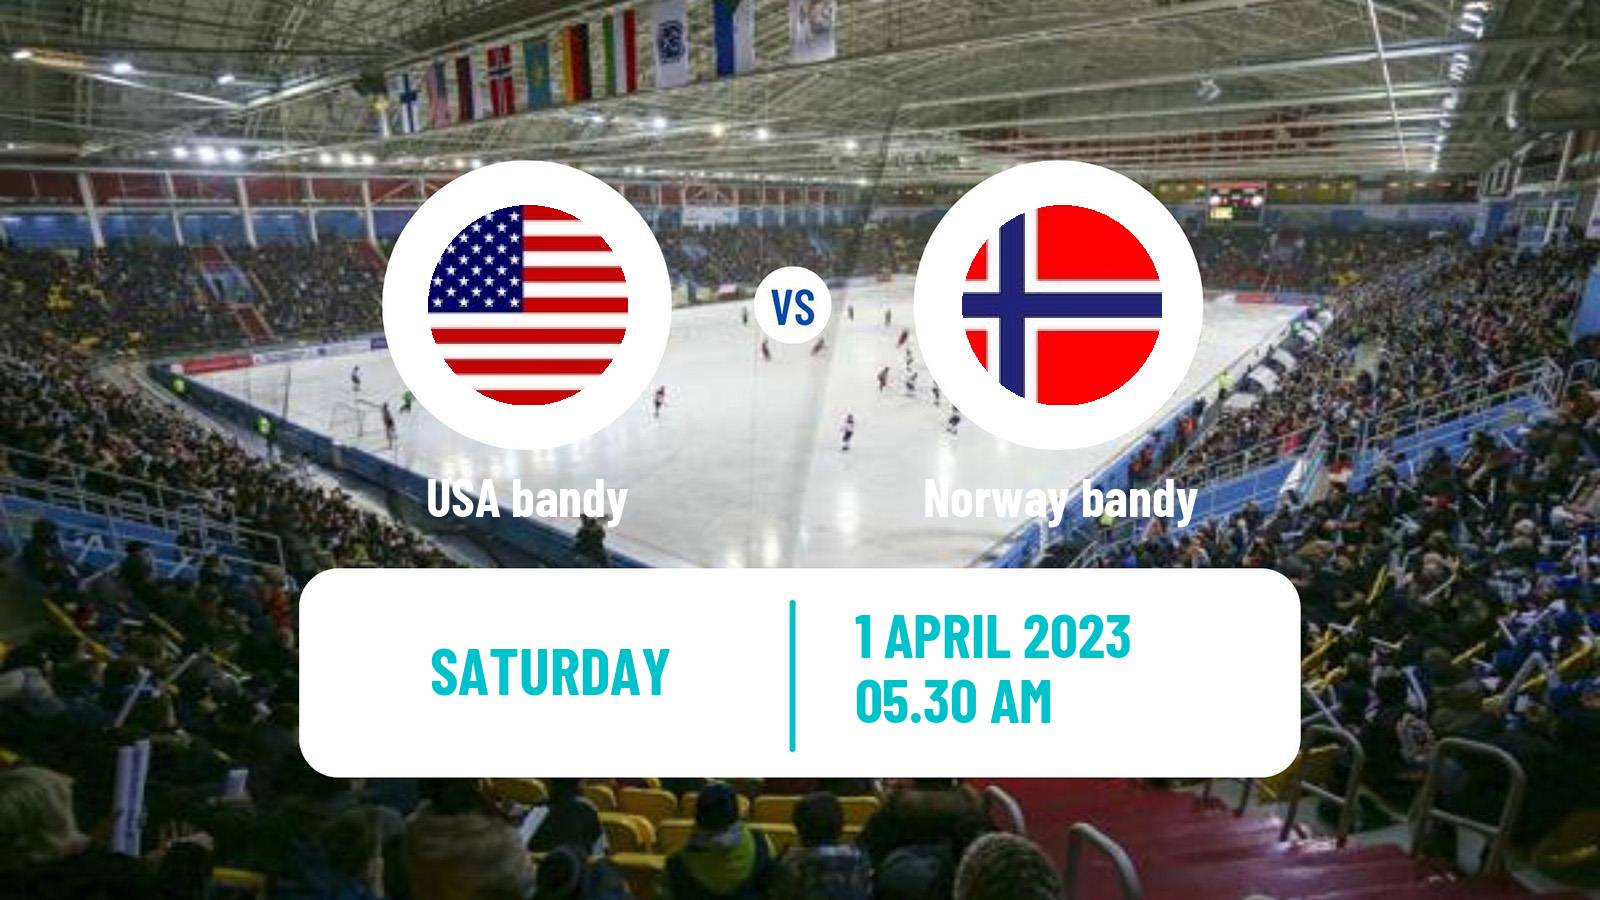 Bandy Bandy World Championship USA - Norway